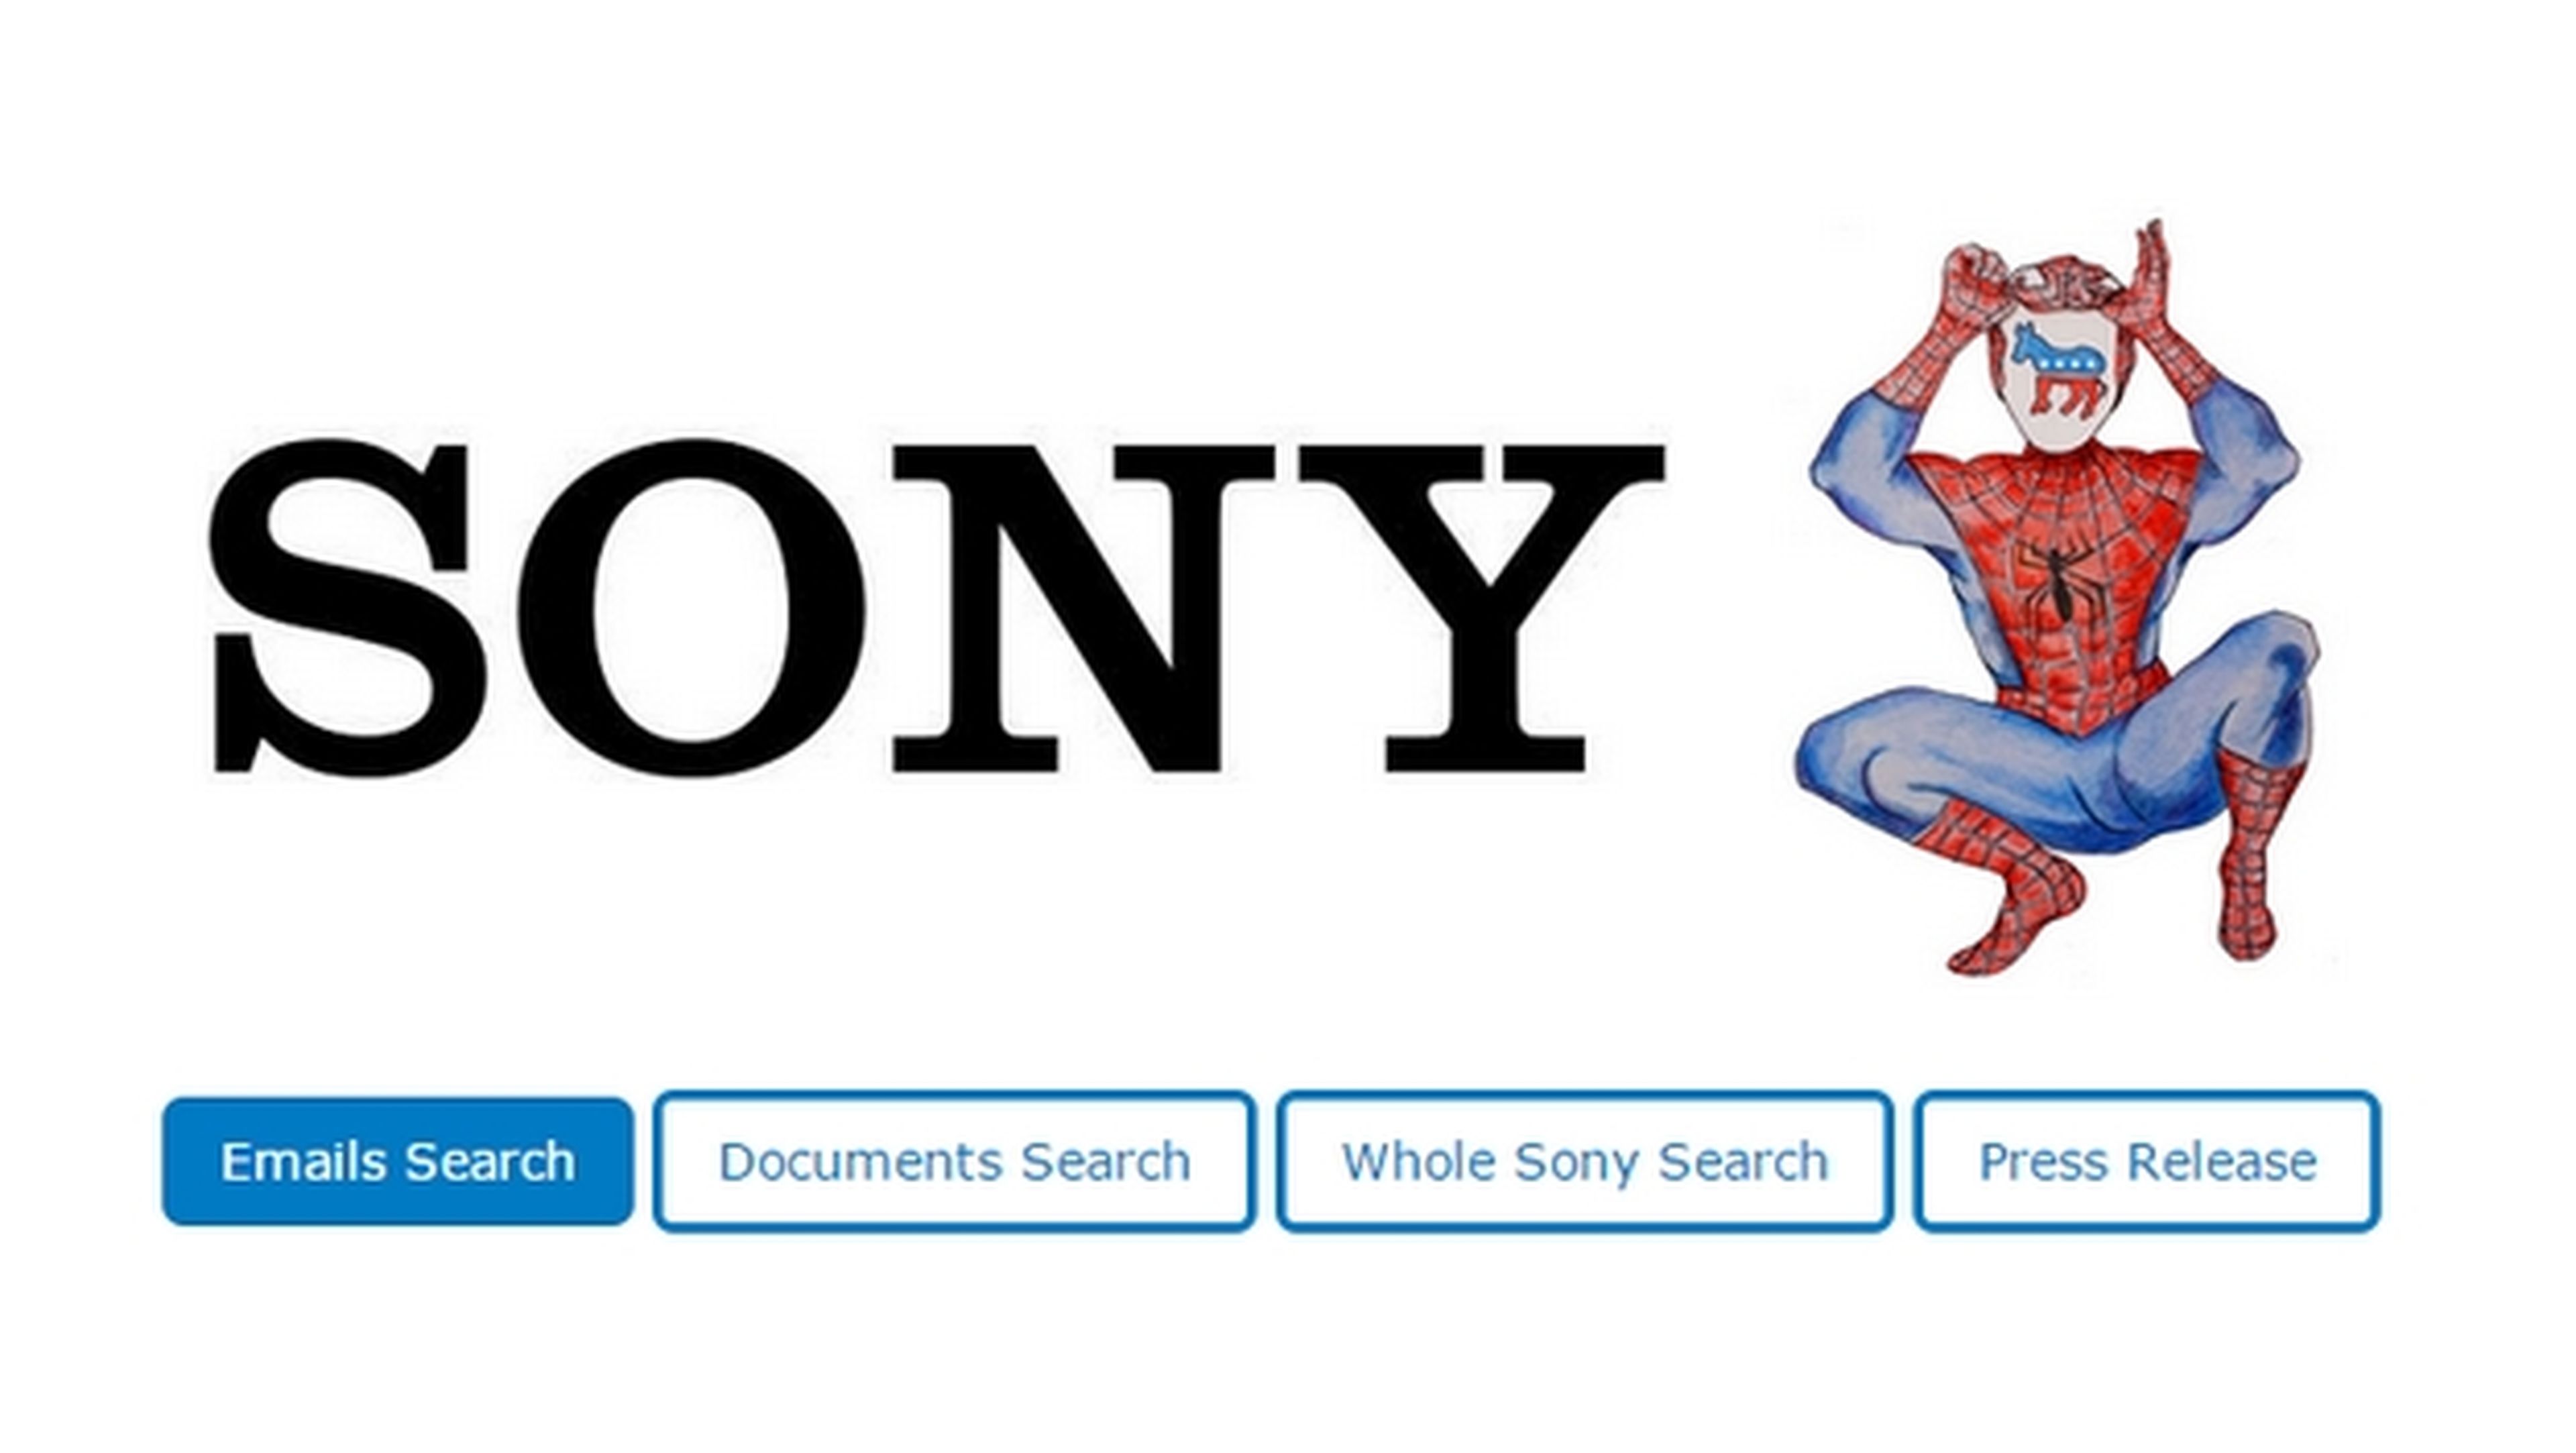 WikiLeaks publica los documentos robados de Sony. ¿Es ético?